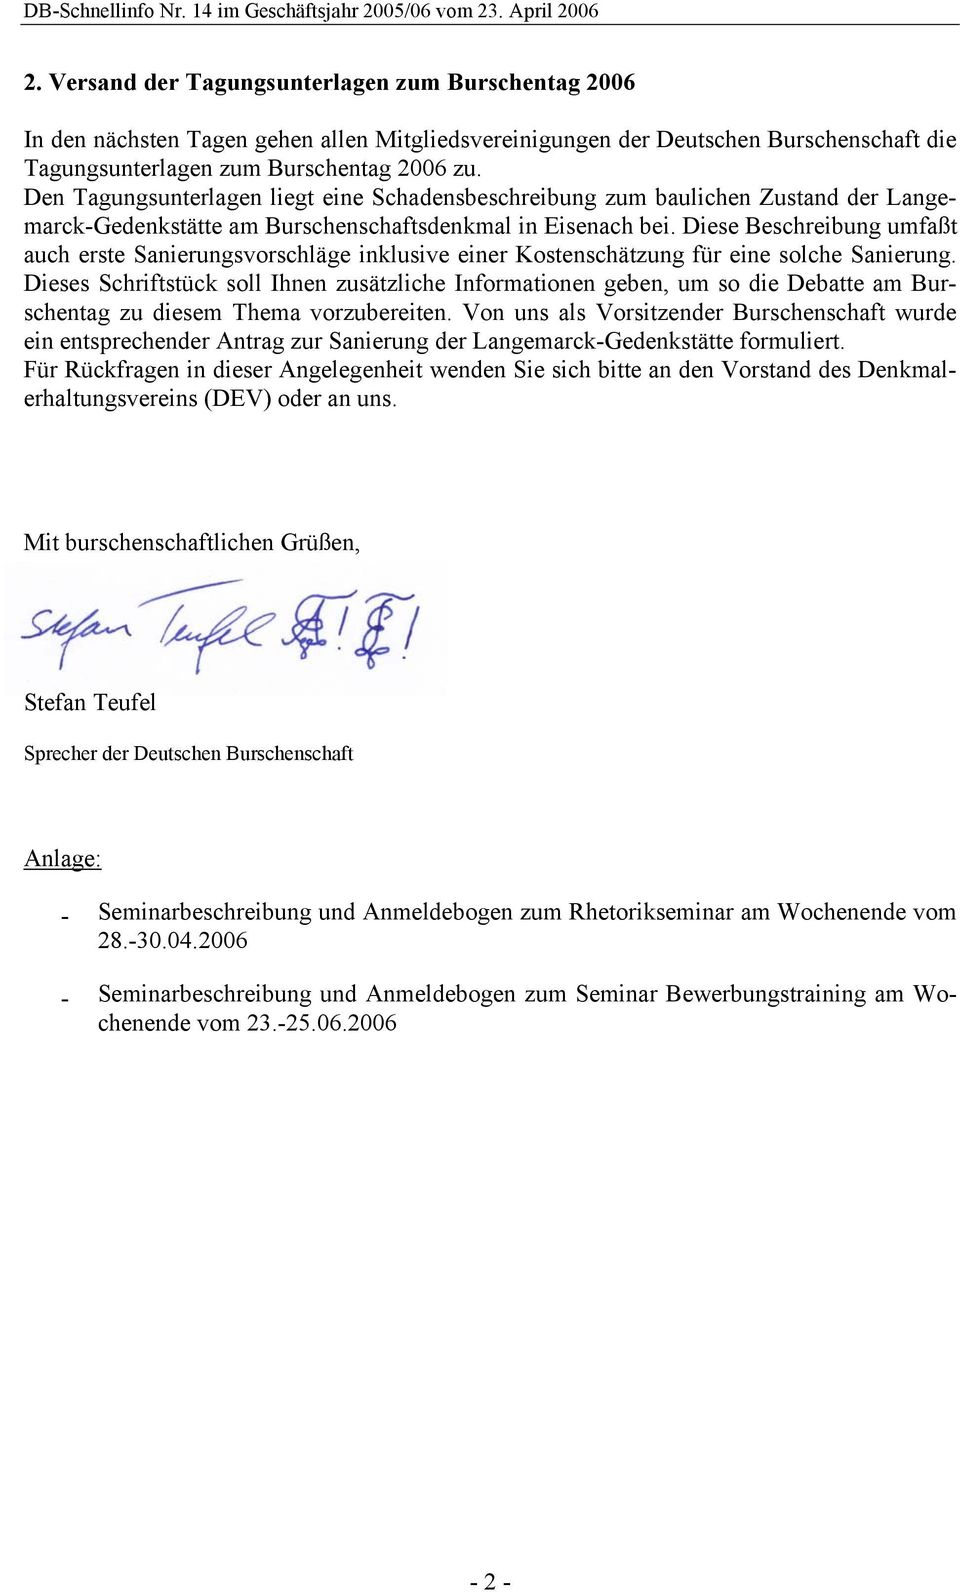 Den Tagungsunterlagen liegt eine Schadensbeschreibung zum baulichen Zustand der Langemarck-Gedenkstätte am Burschenschaftsdenkmal in Eisenach bei.